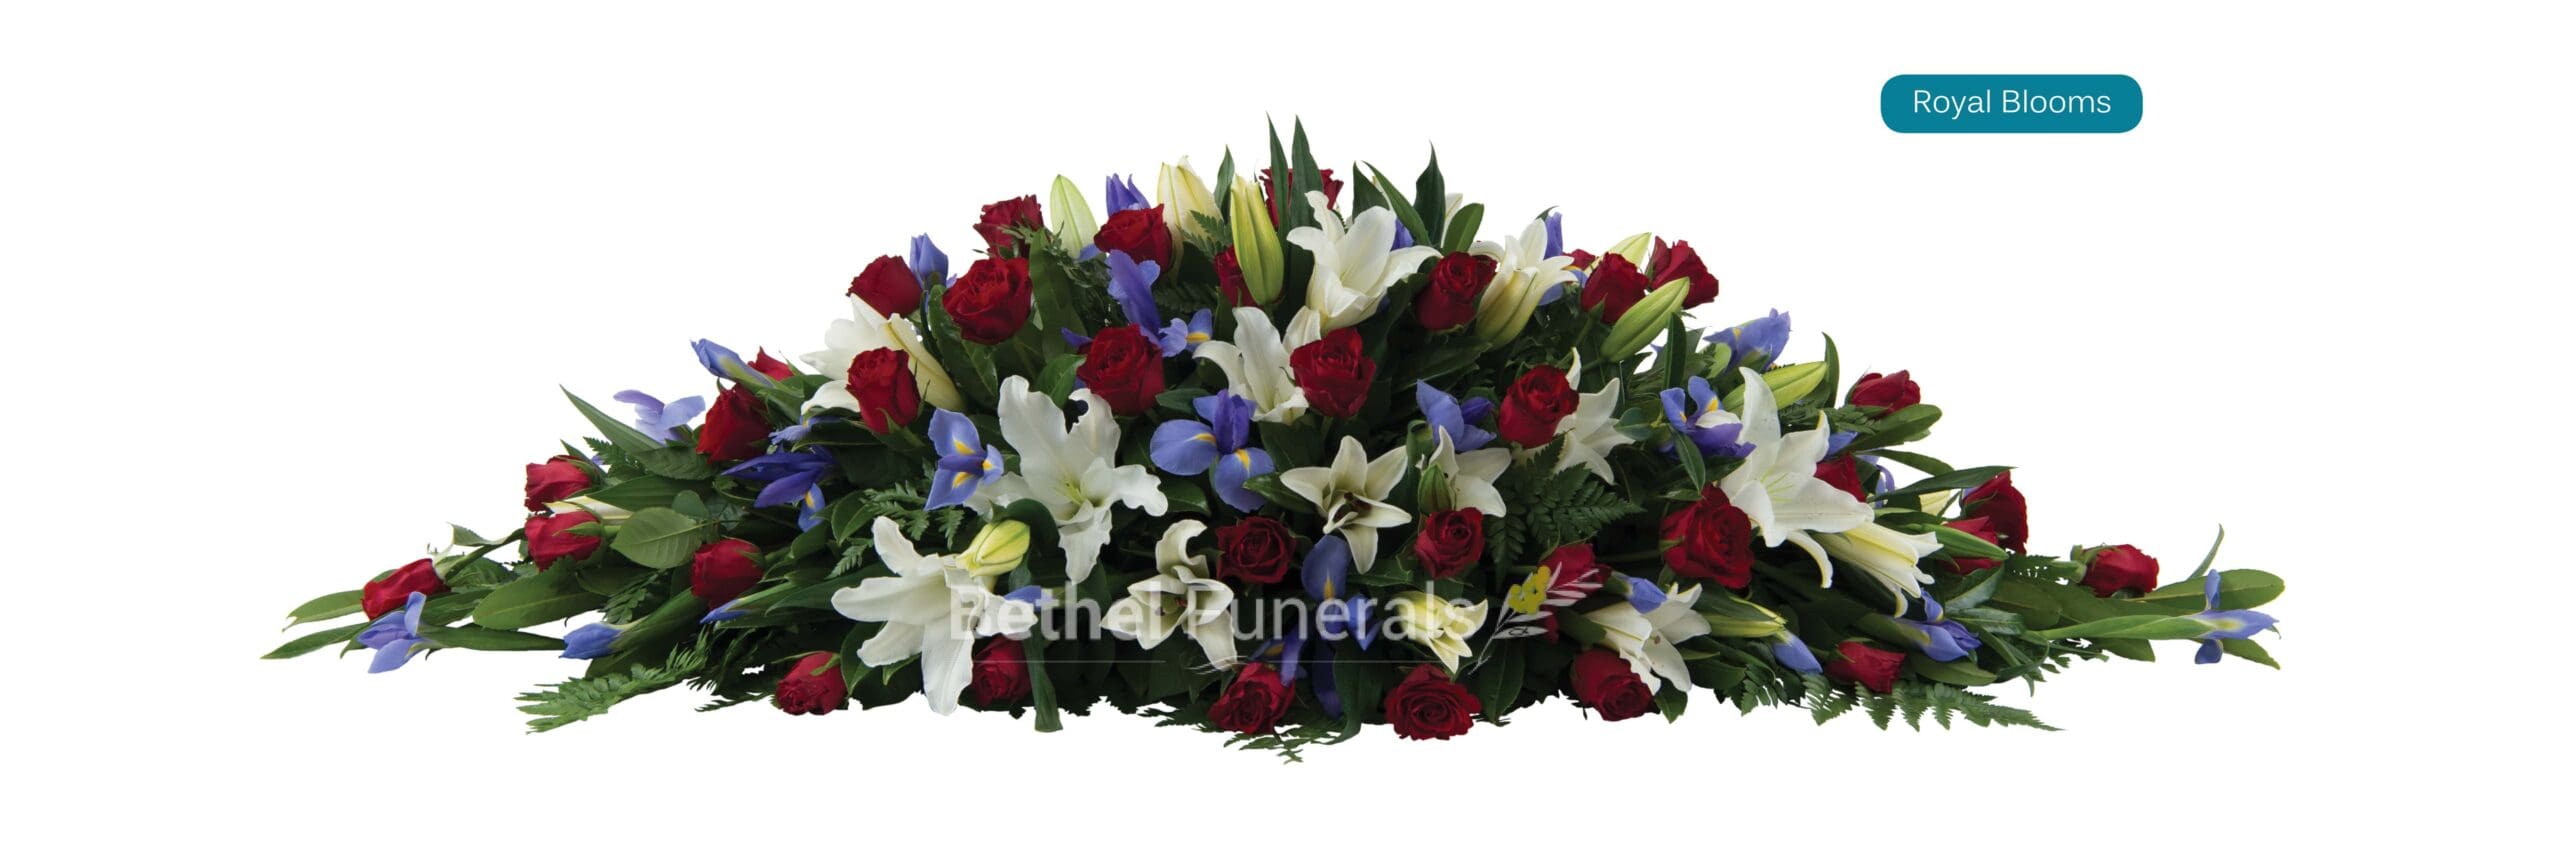 Royal Blooms funeral flowers